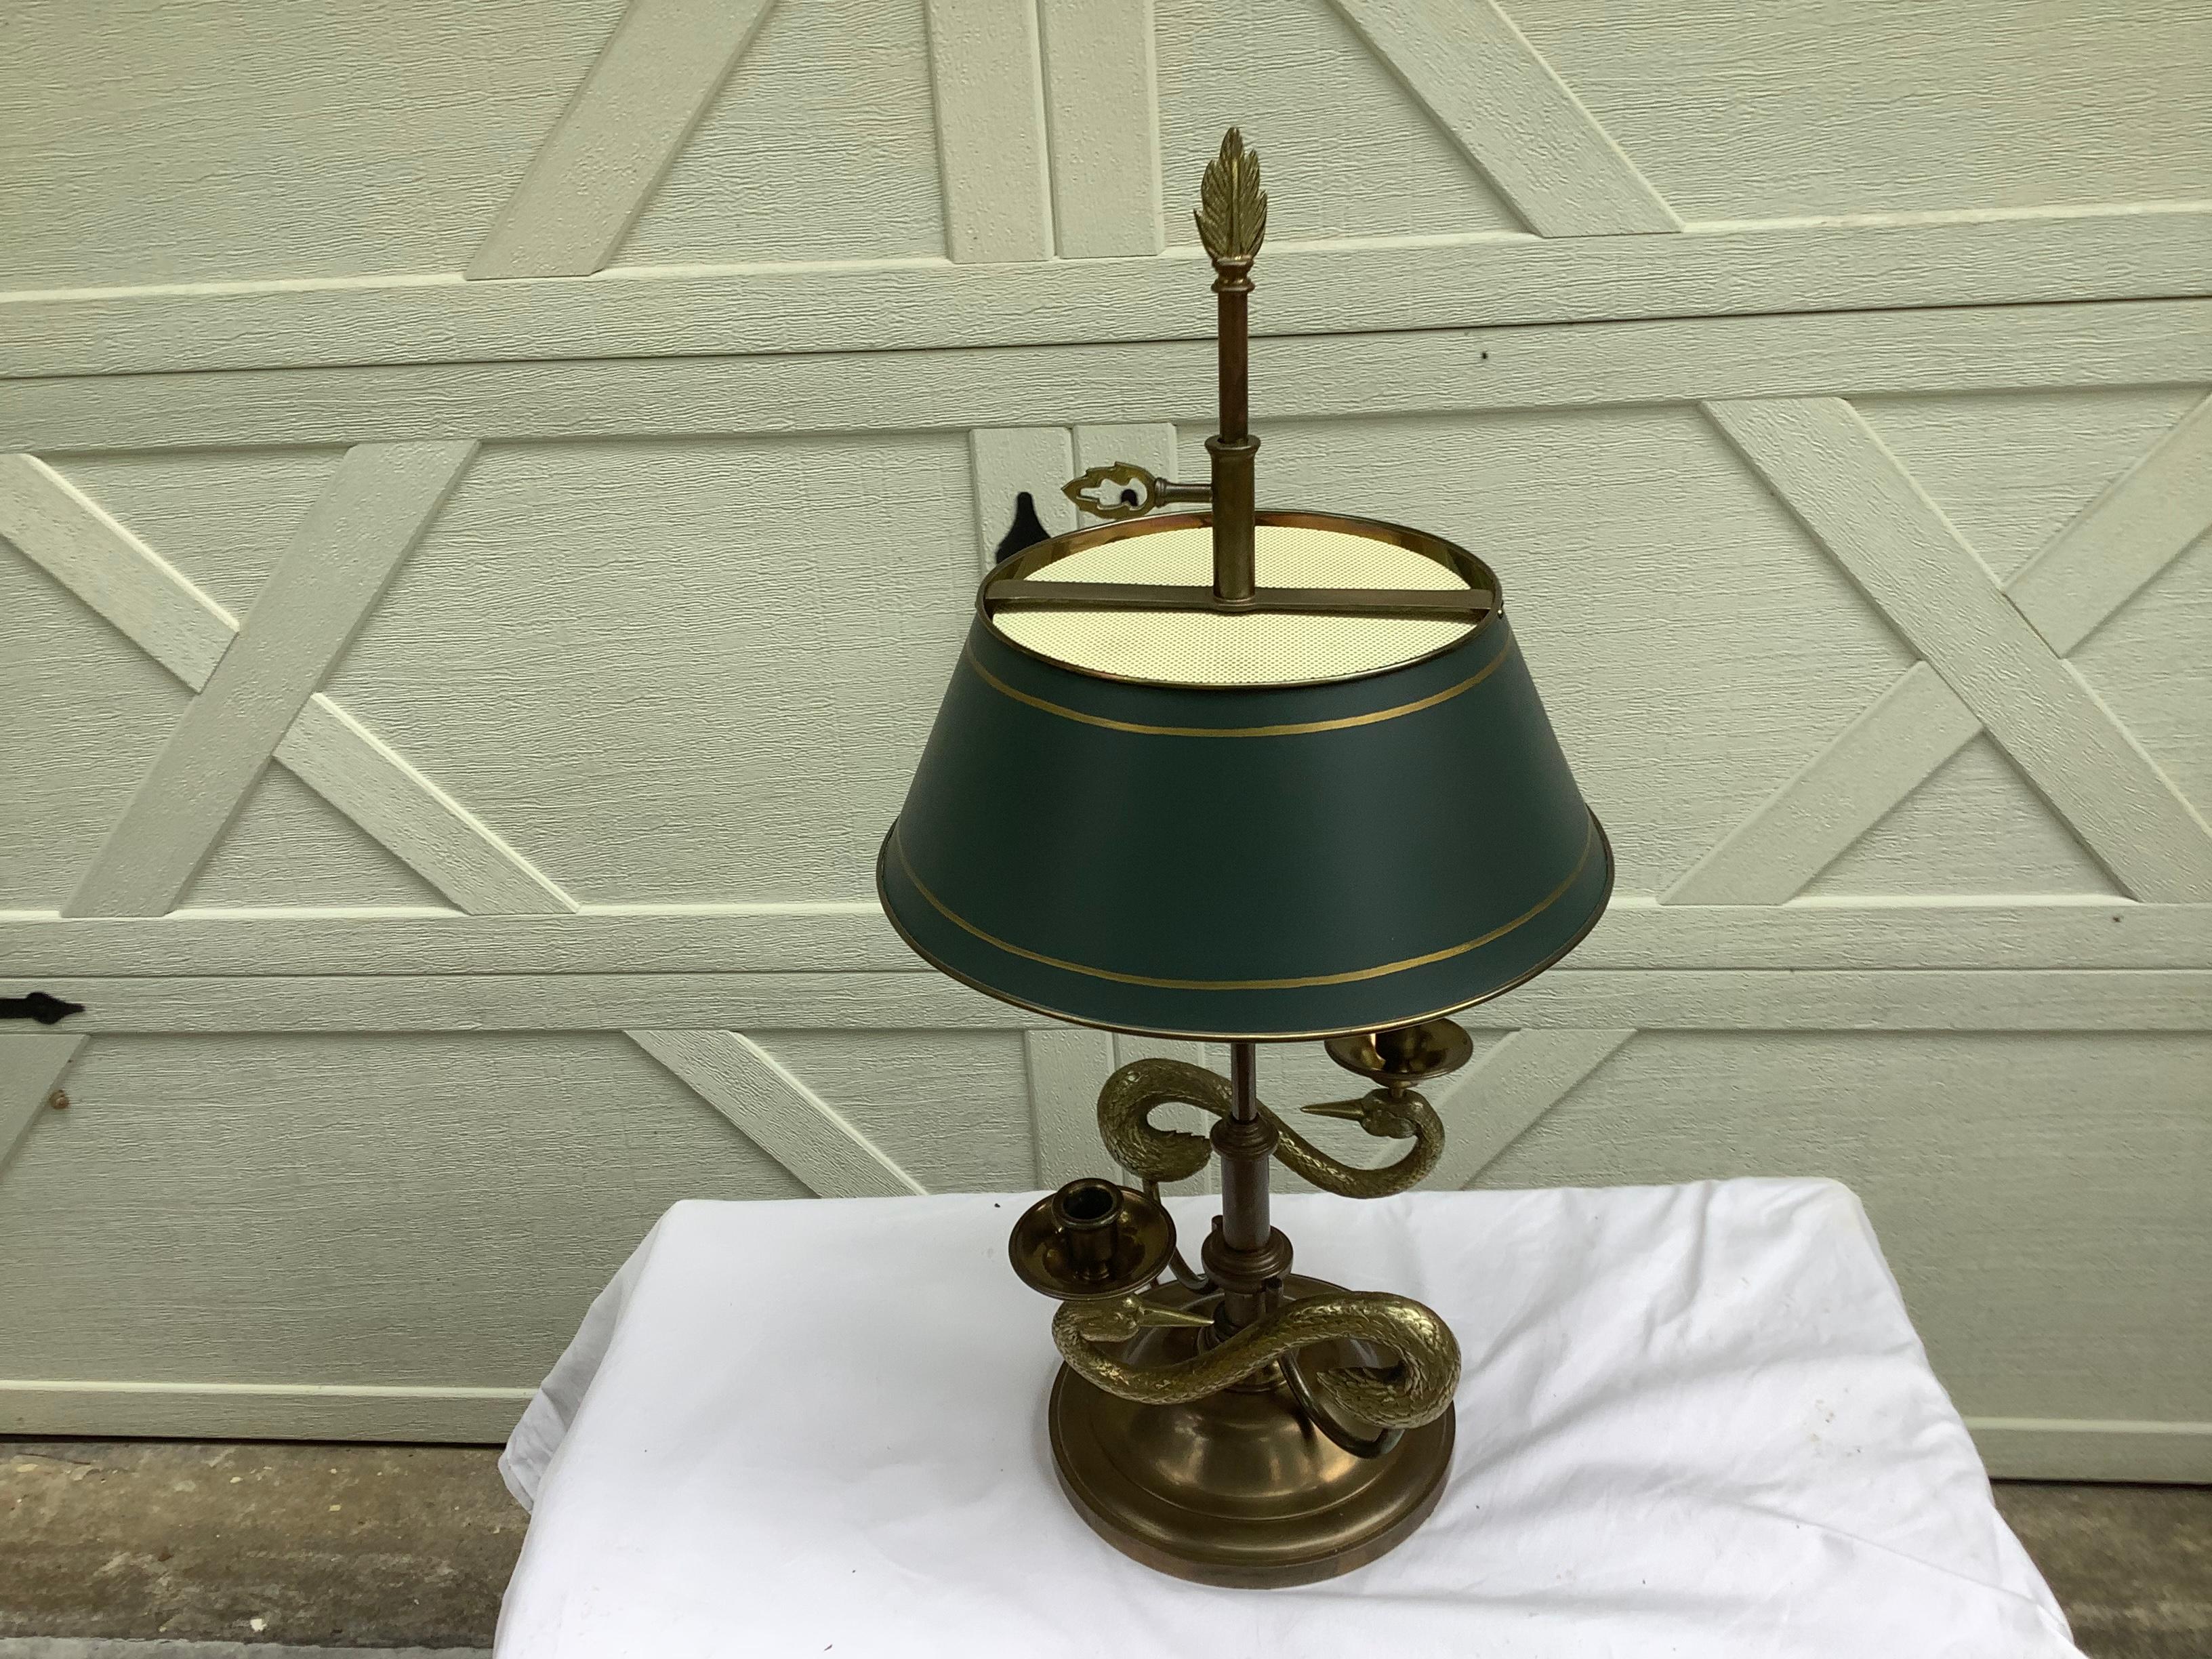 Lampe classique de style bouillotte par Chapman, datée de 1982. Patine d'origine du laiton, avec un abat-jour en tole vert. L'abat-jour ne se soulève pas et ne s'abaisse pas, comme une authentique lampe à bouilotte. Des cygnes entrelacés forment la